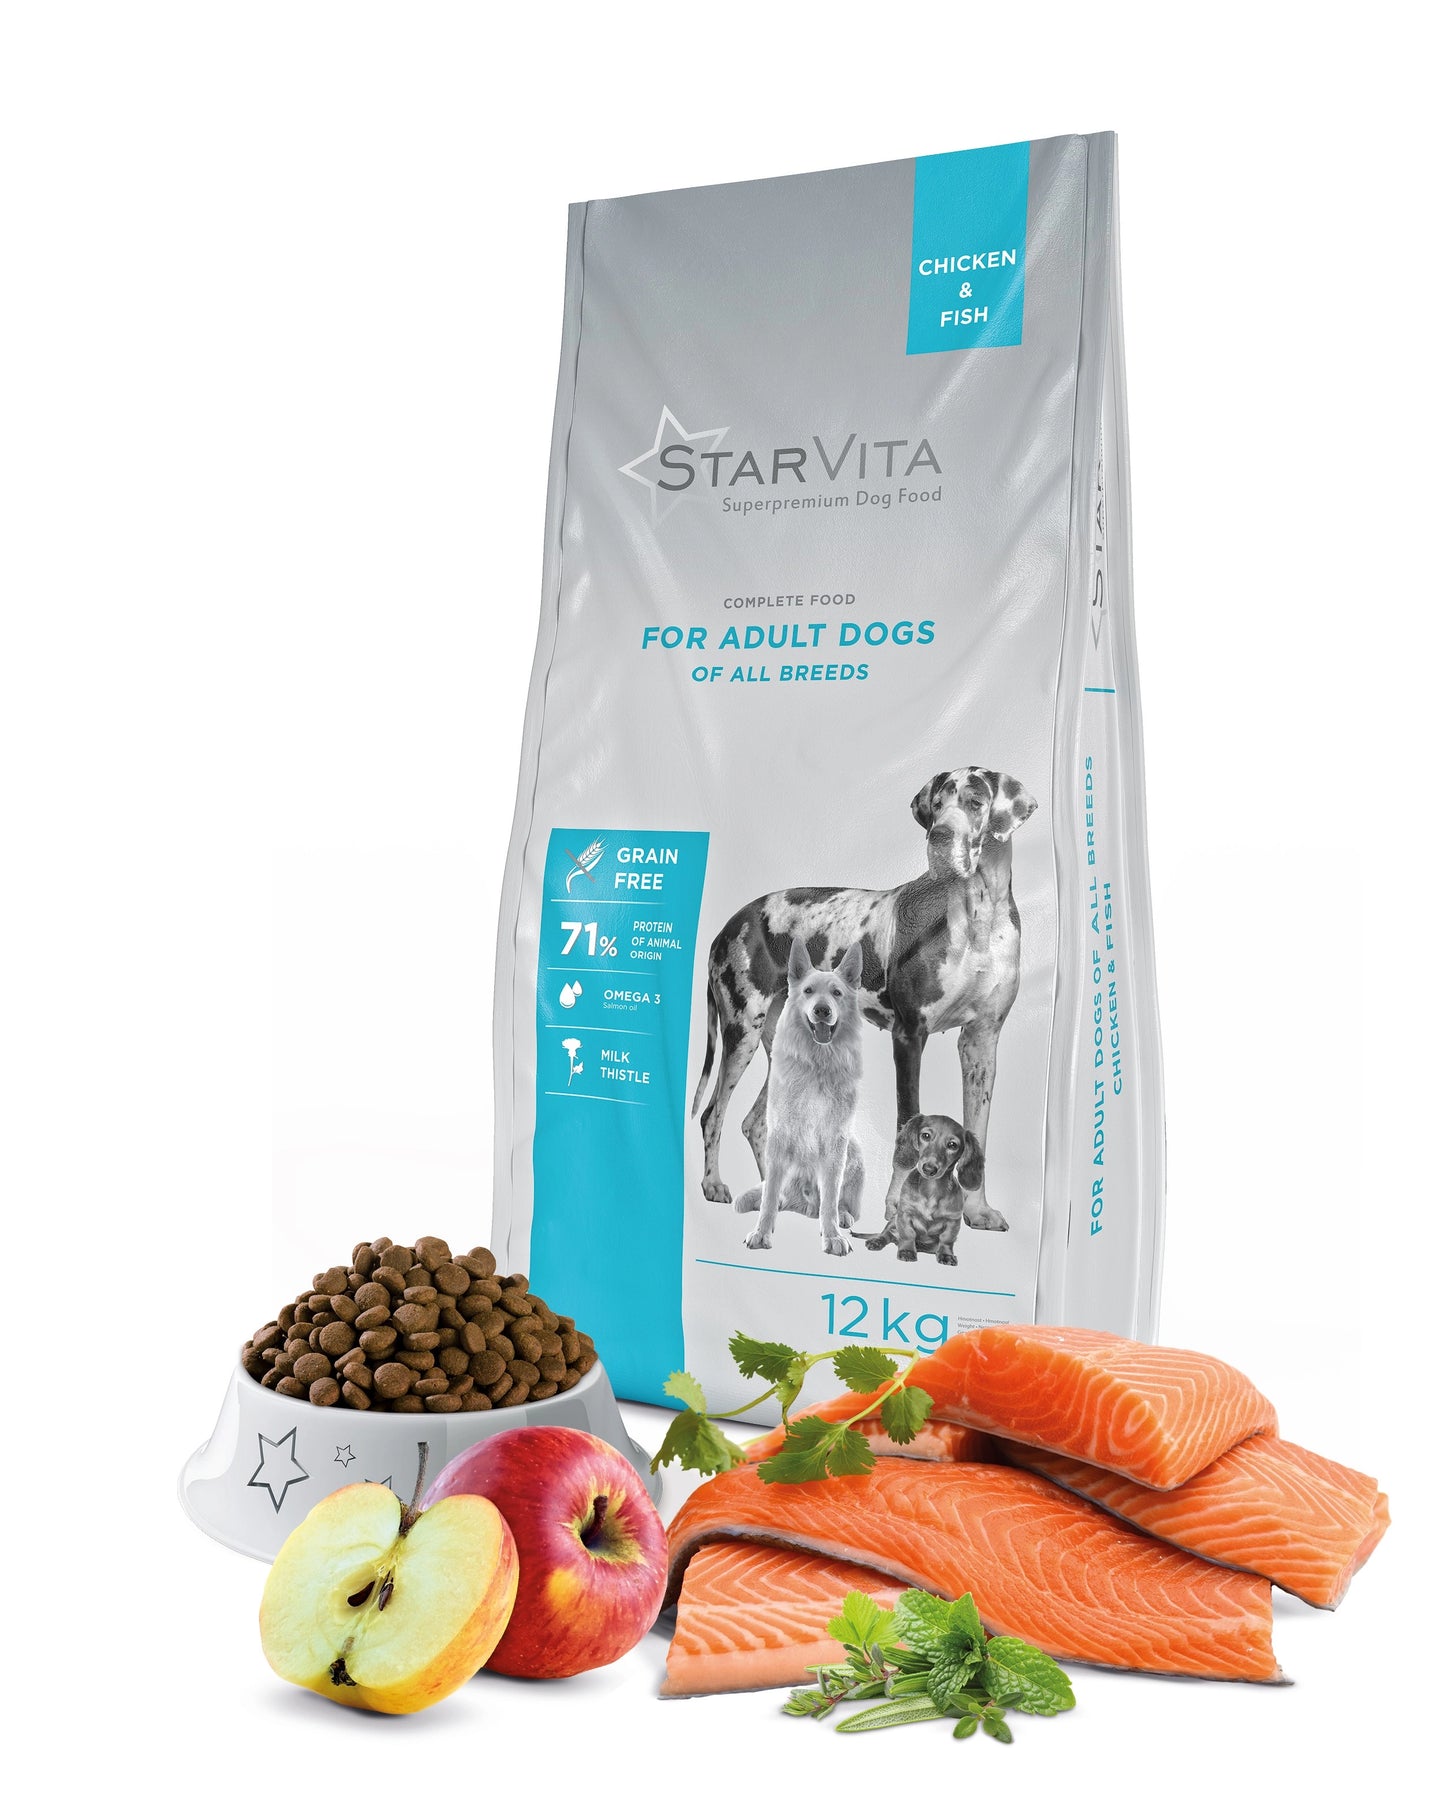 Förpackning och ingredienser i Starvita torrfoder för vuxna hundar med kyckling och fisk